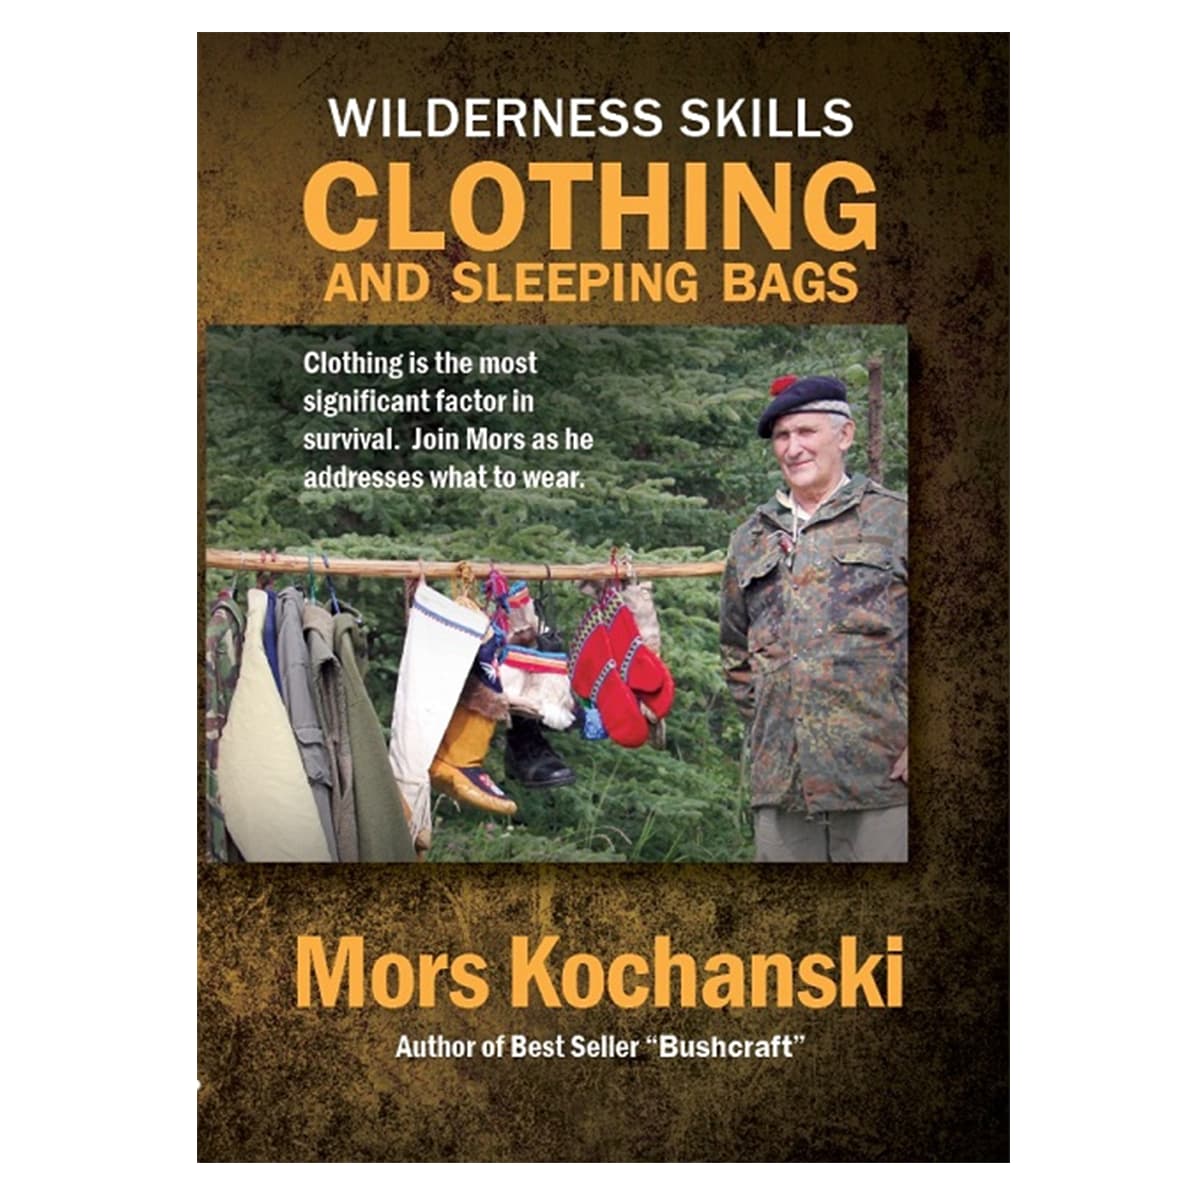 Mors Kochanski - Clothing & Sleeping Bags - DVD